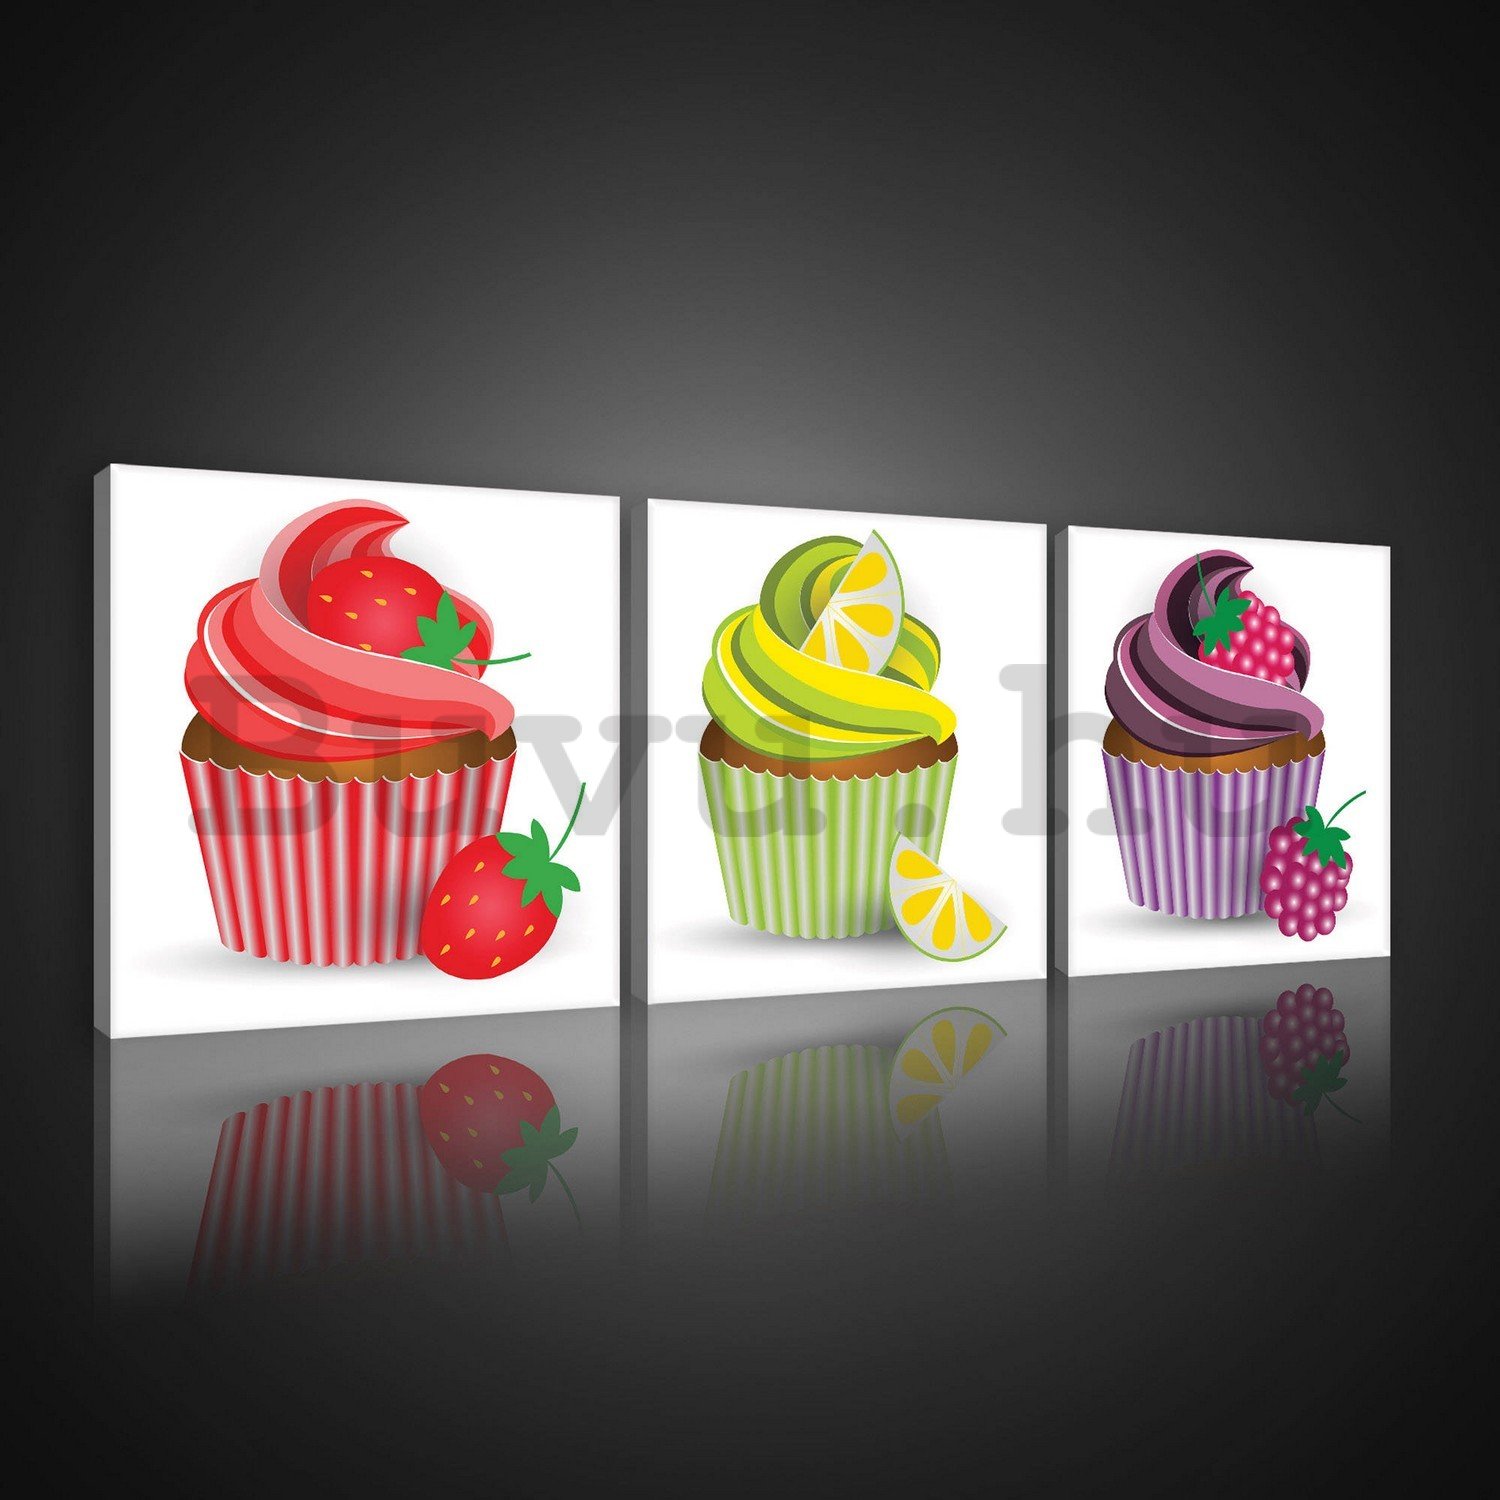 Vászonkép: Cupcakes - készlet 3db 25x25cm